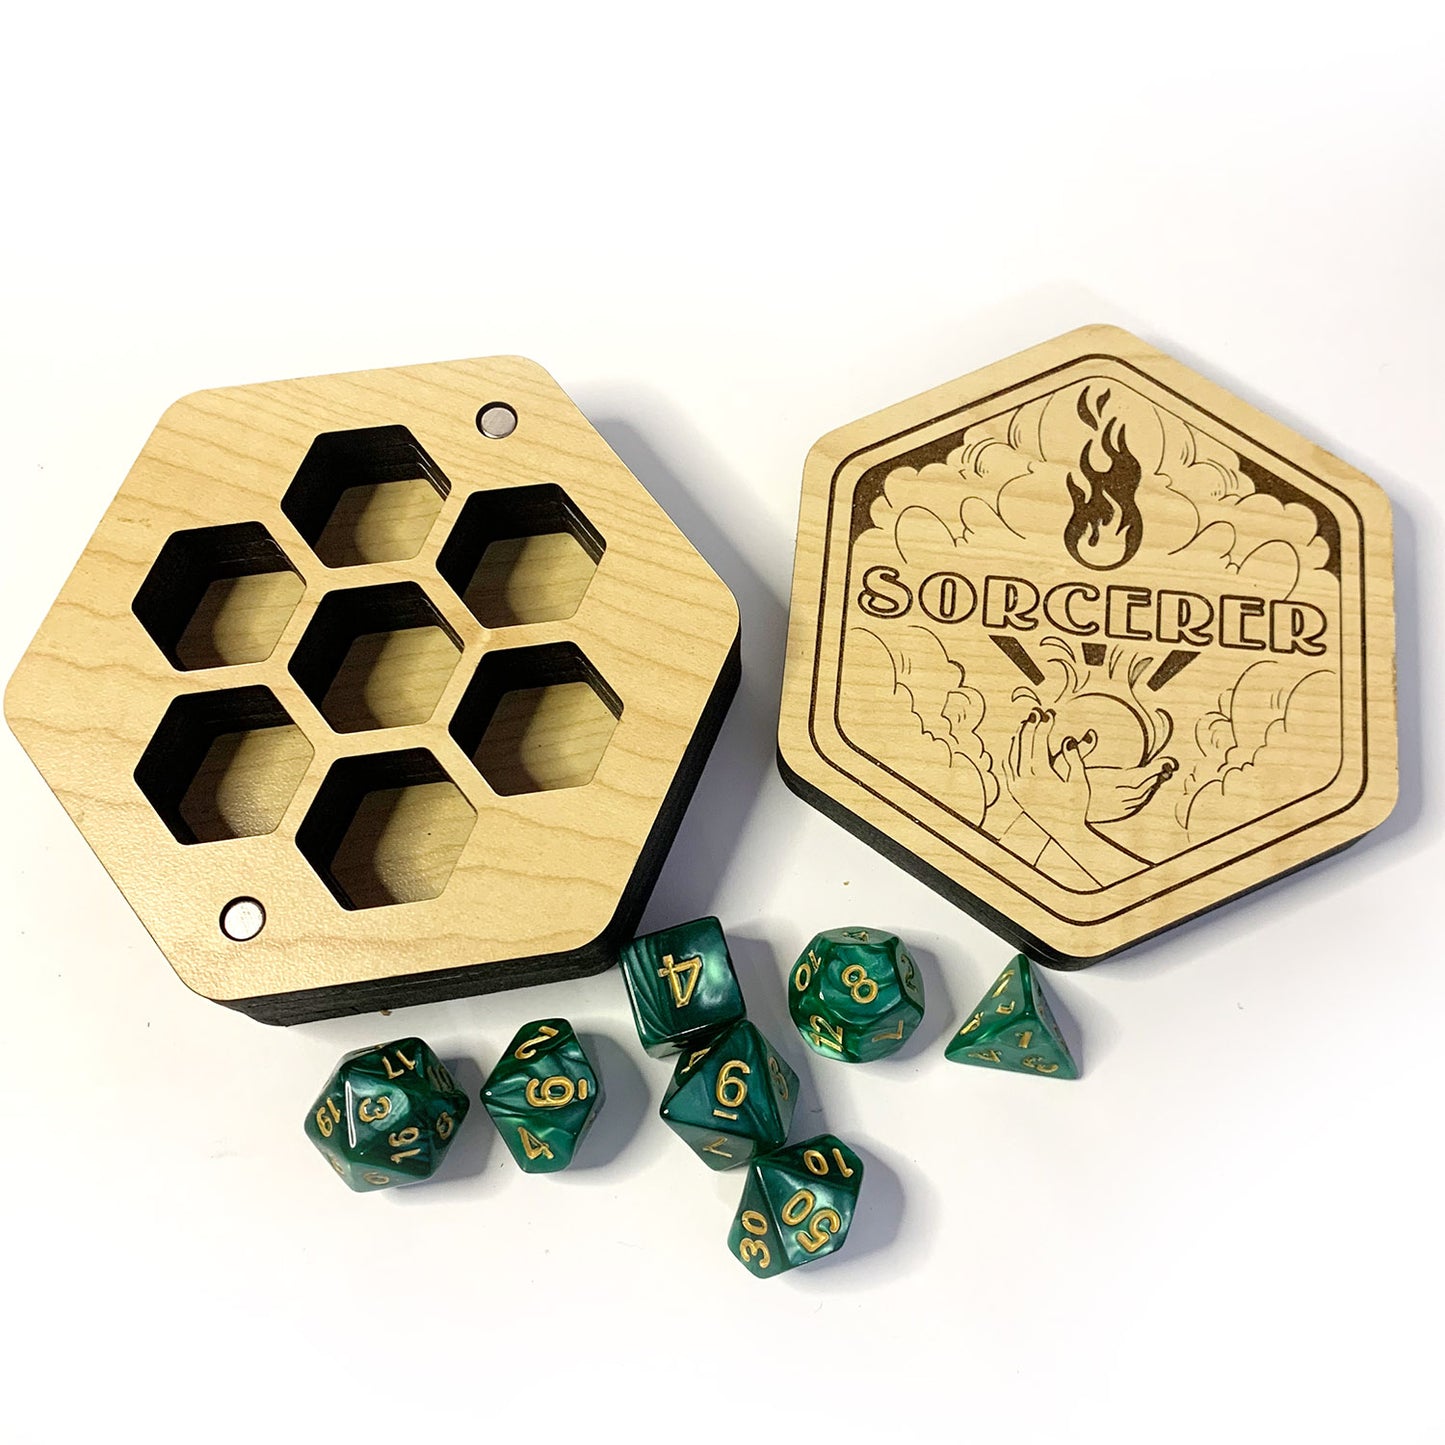 Hexagonal Sorcerer Dice Box - Hex Sorcerer Dice Vault